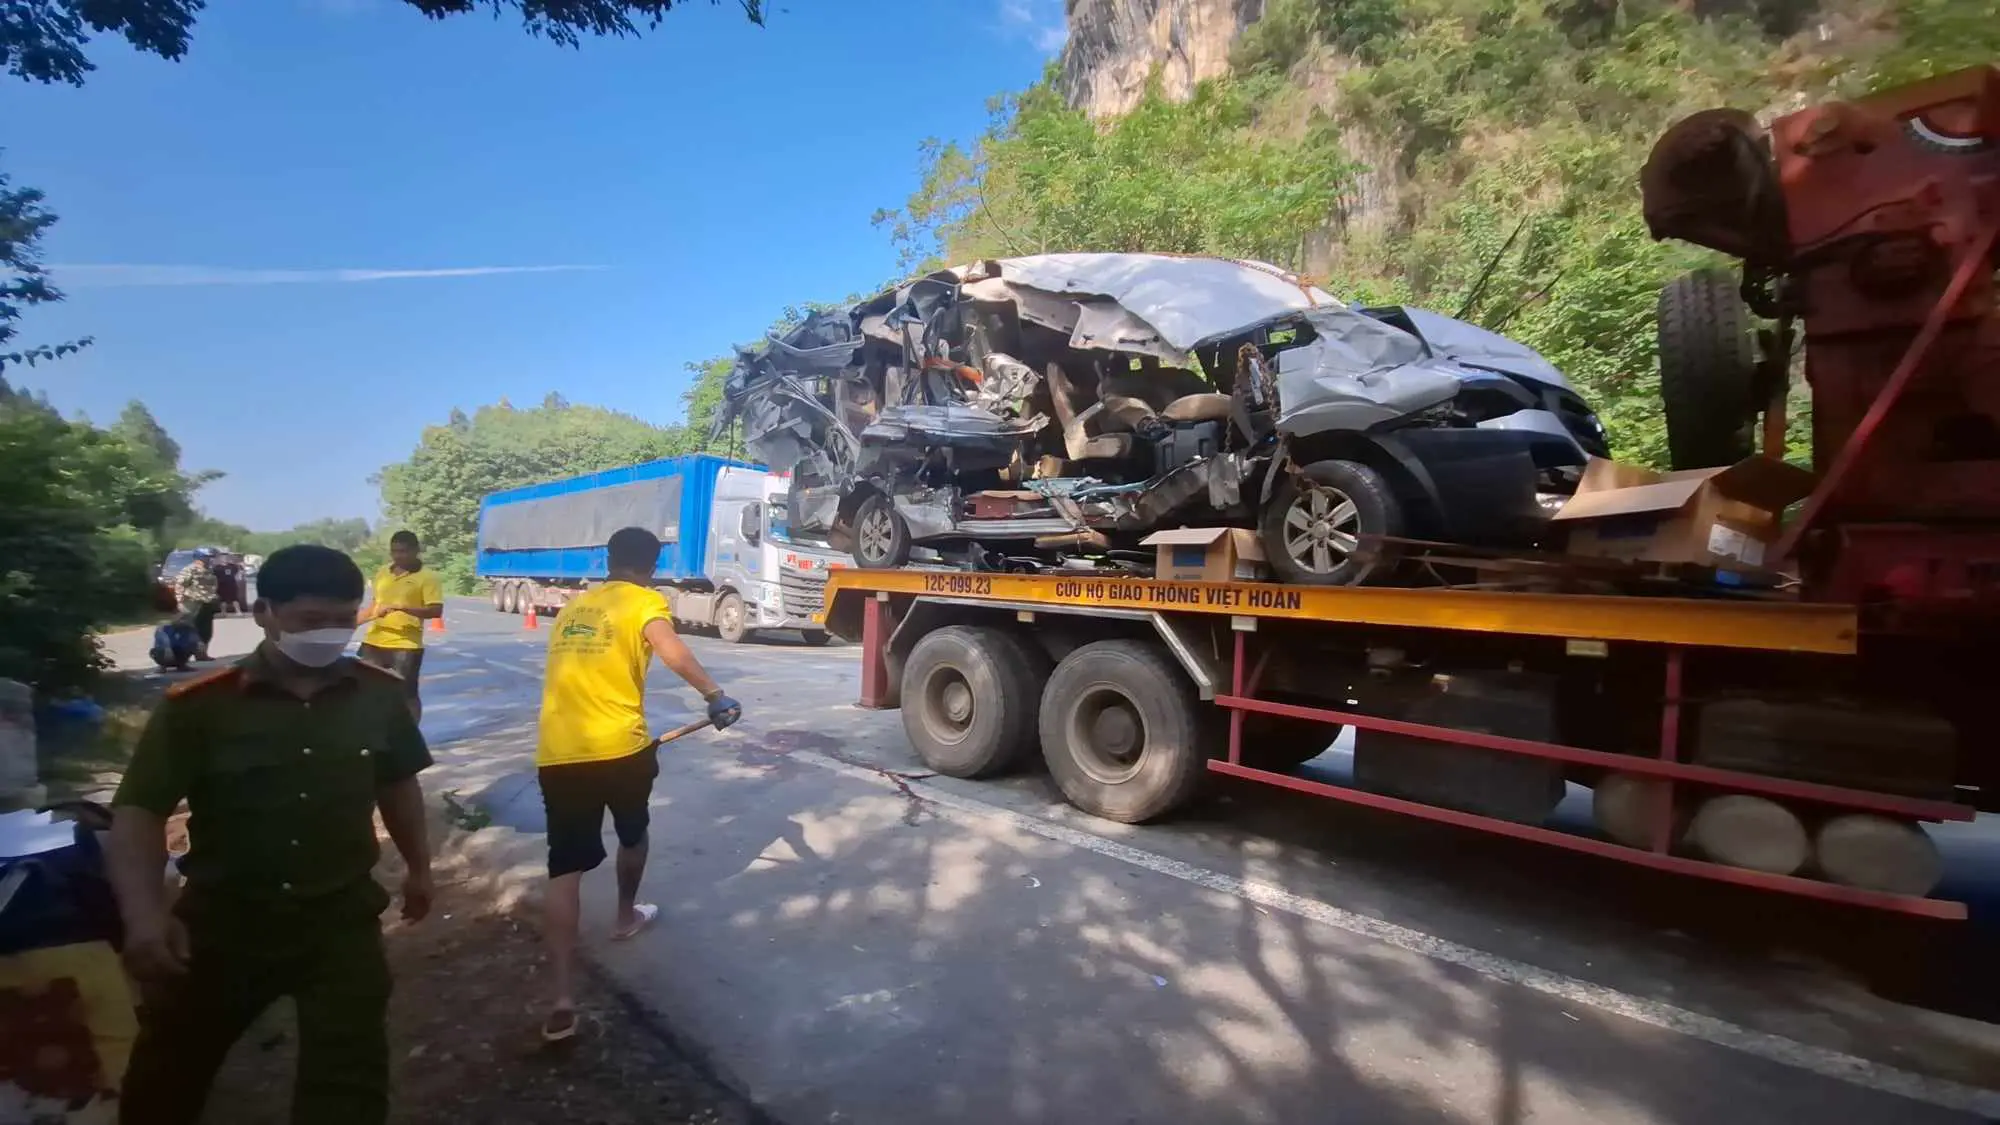 Lạng Sơn: Xe khách 16 chỗ gây tai nạn